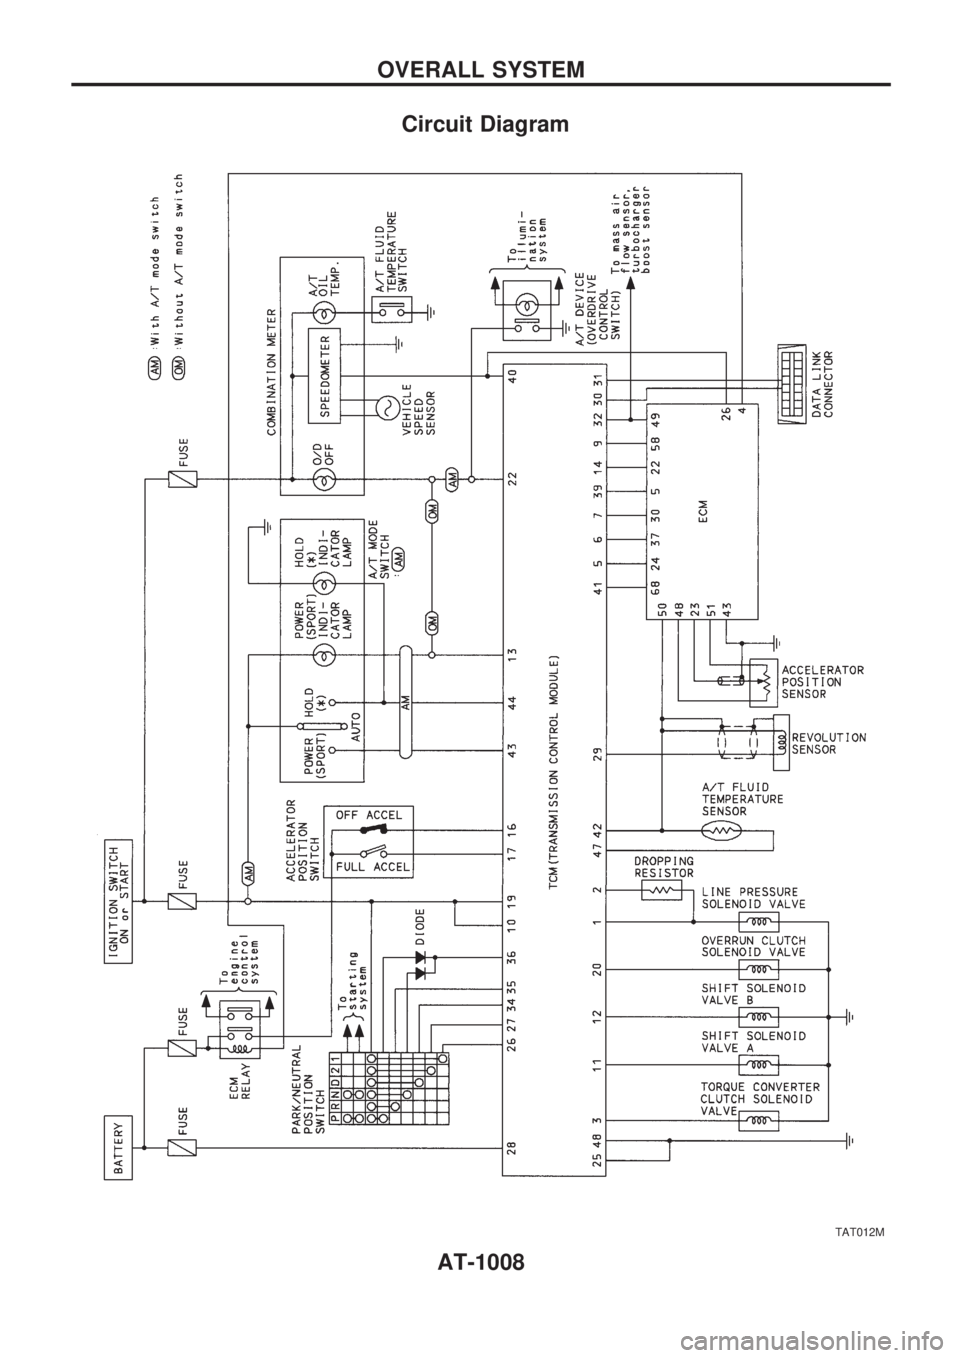 NISSAN PATROL 2000  Electronic Repair Manual Circuit Diagram
TAT012M
OVERALL SYSTEM
AT-1008 